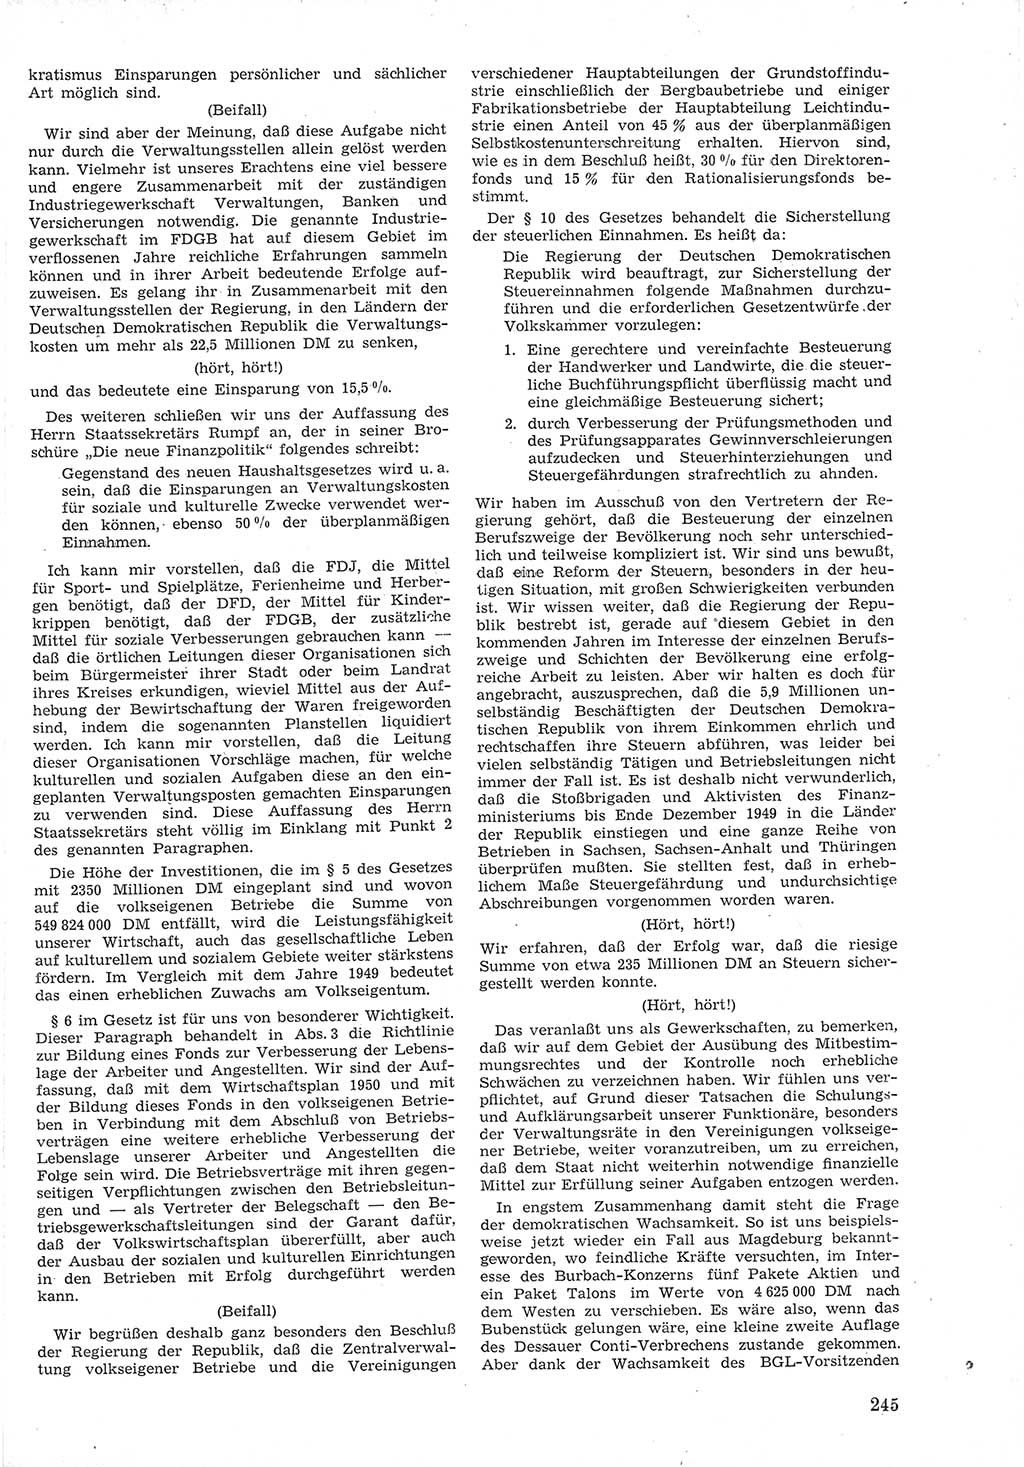 Provisorische Volkskammer (VK) der Deutschen Demokratischen Republik (DDR) 1949-1950, Dokument 259 (Prov. VK DDR 1949-1950, Dok. 259)